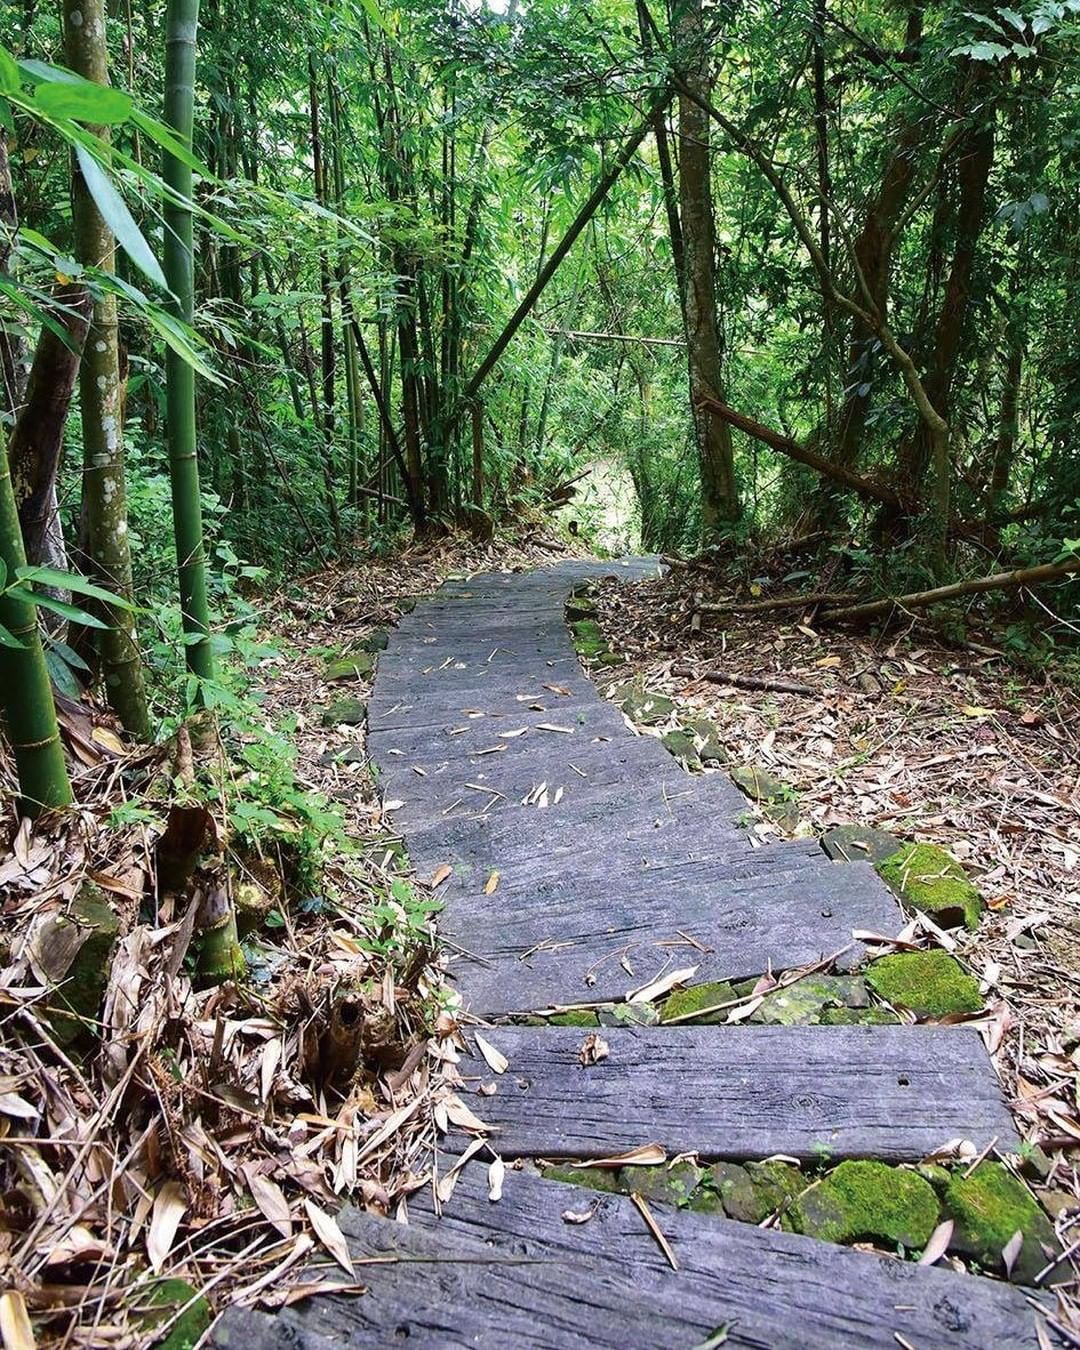 歡迎來到香樟林步道 蜿蜒木棧道是我的特色喔 -⠀⠀⠀⠀⠀⠀⠀⠀⠀⠀⠀⠀ #travelalishan 或 @travelalish...